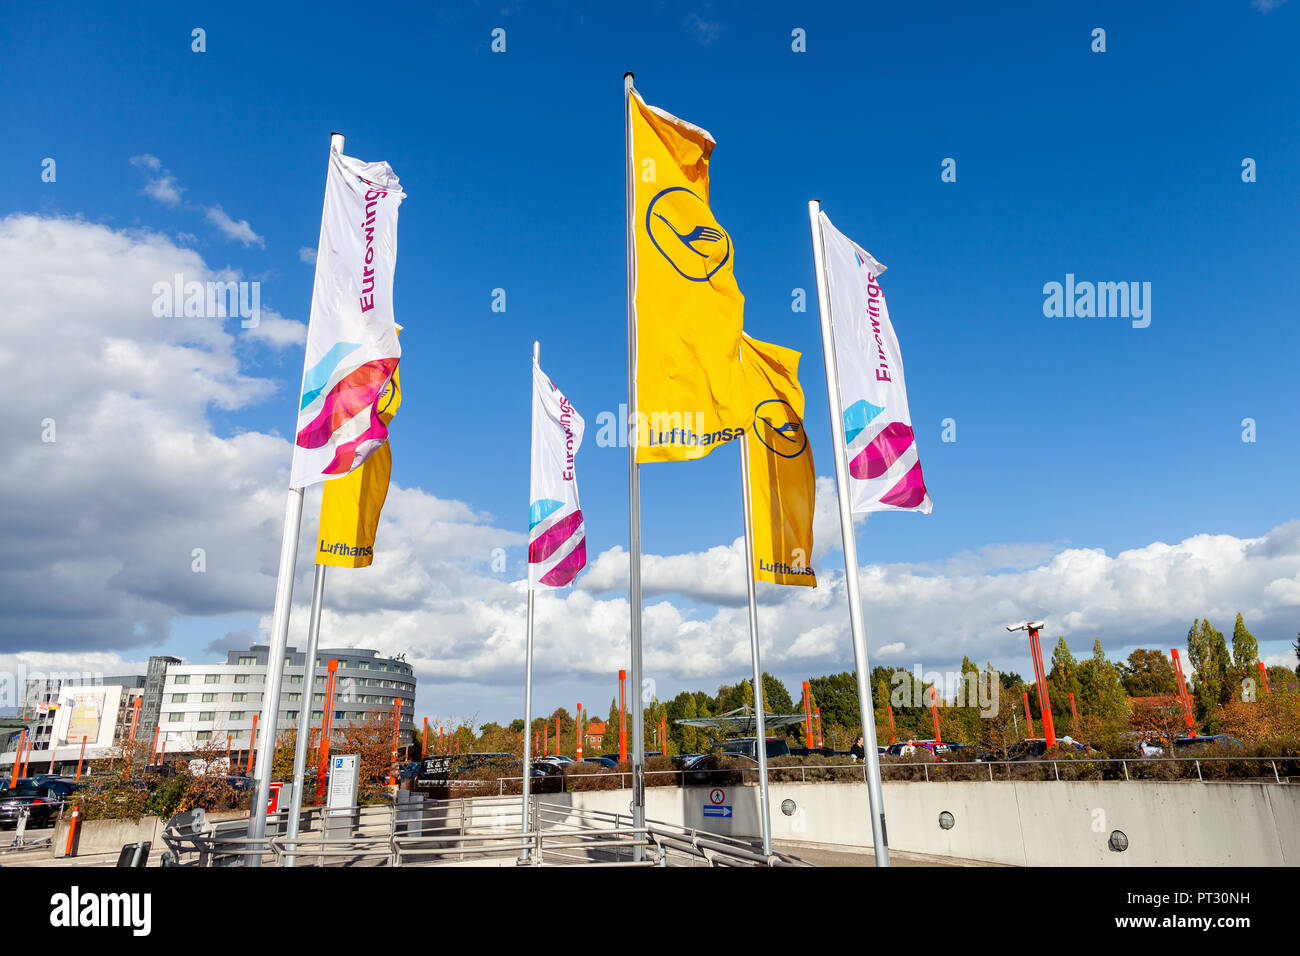 Amburgo / Germania - 28 settembre 2018: Bandiere del tedesco Lufthansa e Eurowings al aeroporto di Amburgo Foto Stock